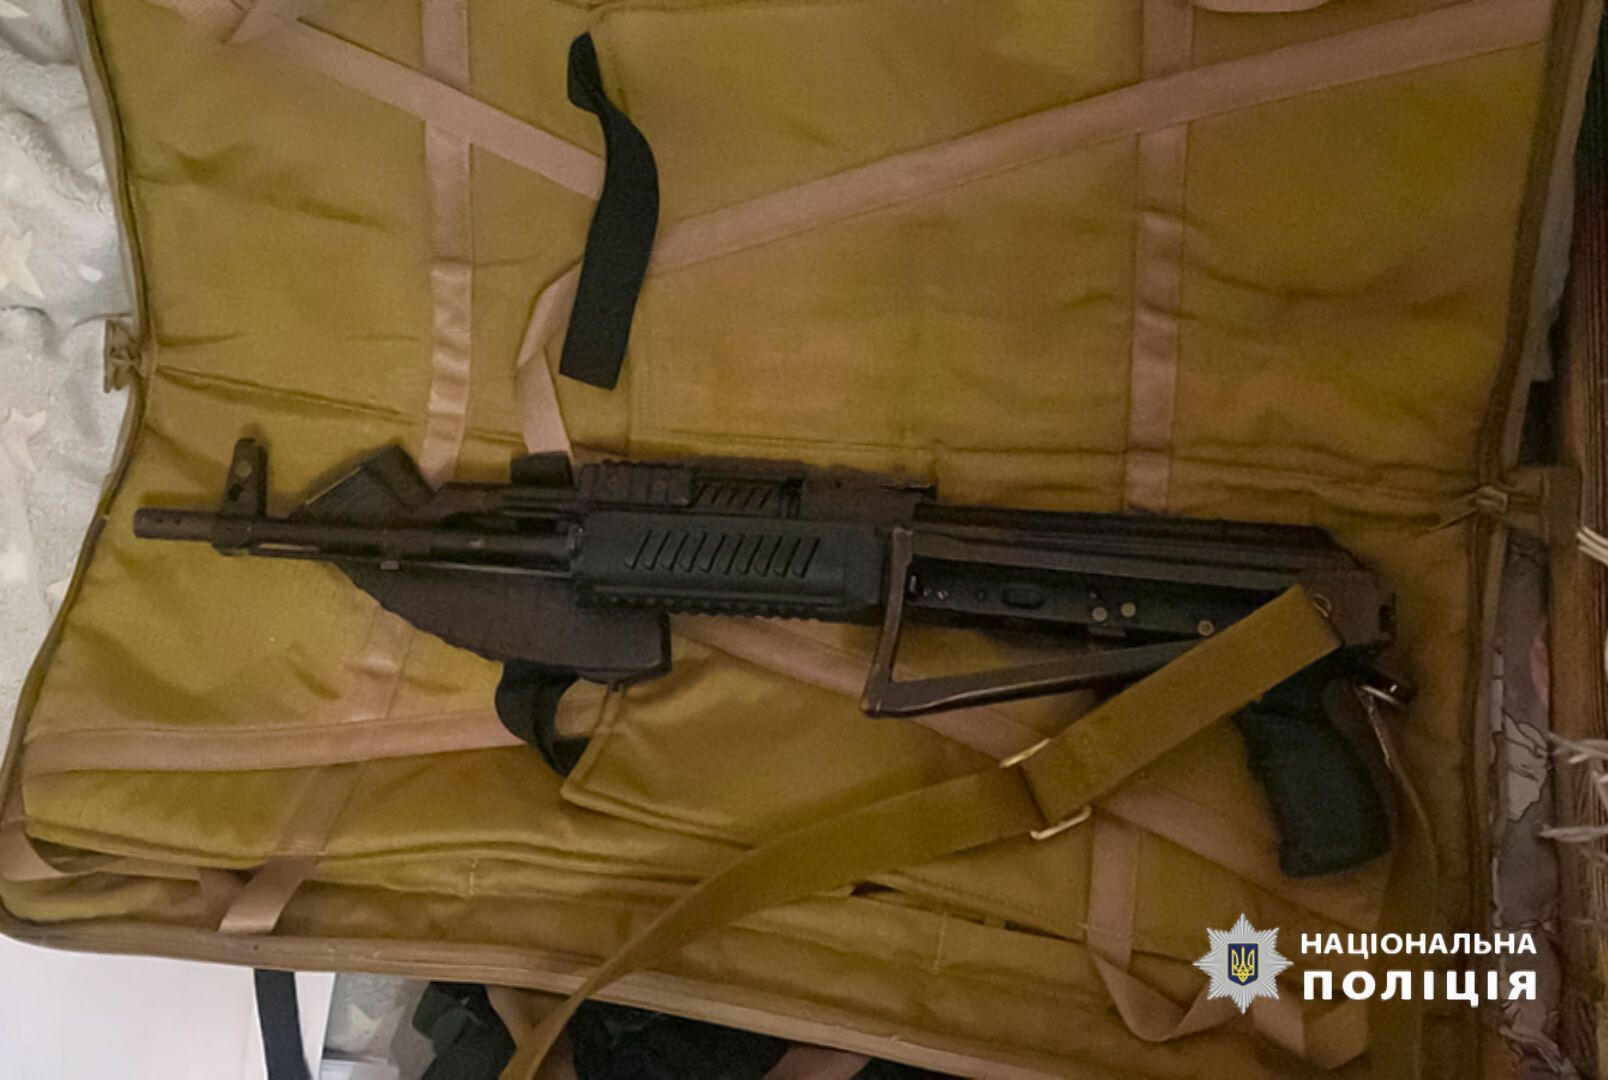 В Киеве задержаны рейдеры, которые захватывали парковки: во время обысков нашли оружие и деньги. Фото